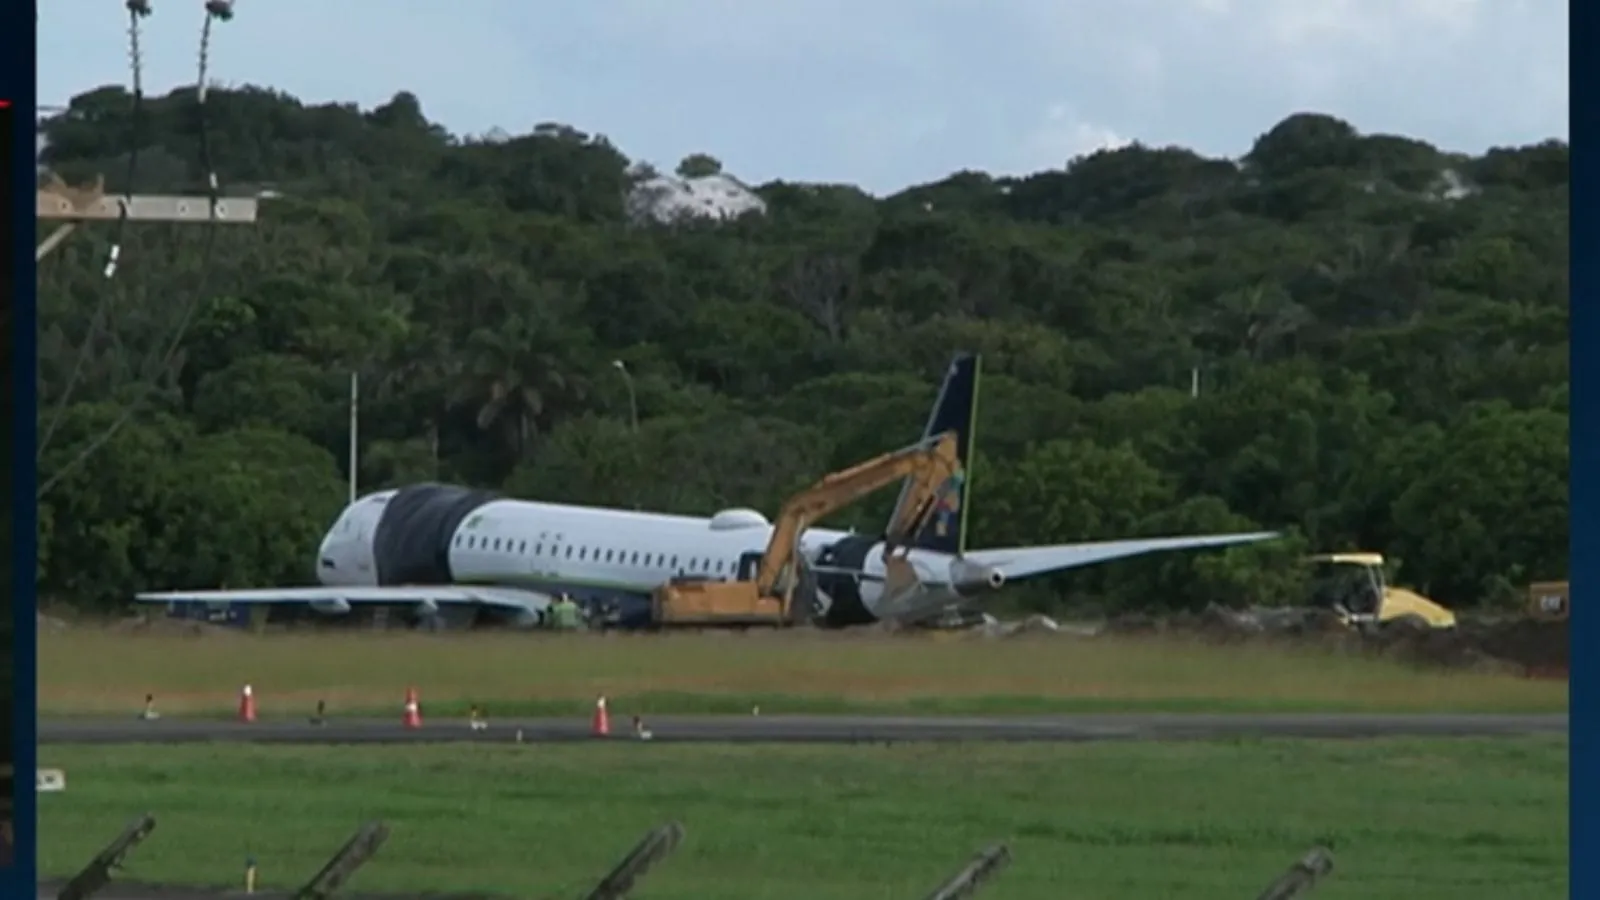 Avião da Azul que saiu da pista em Salvador voltou a operar neste